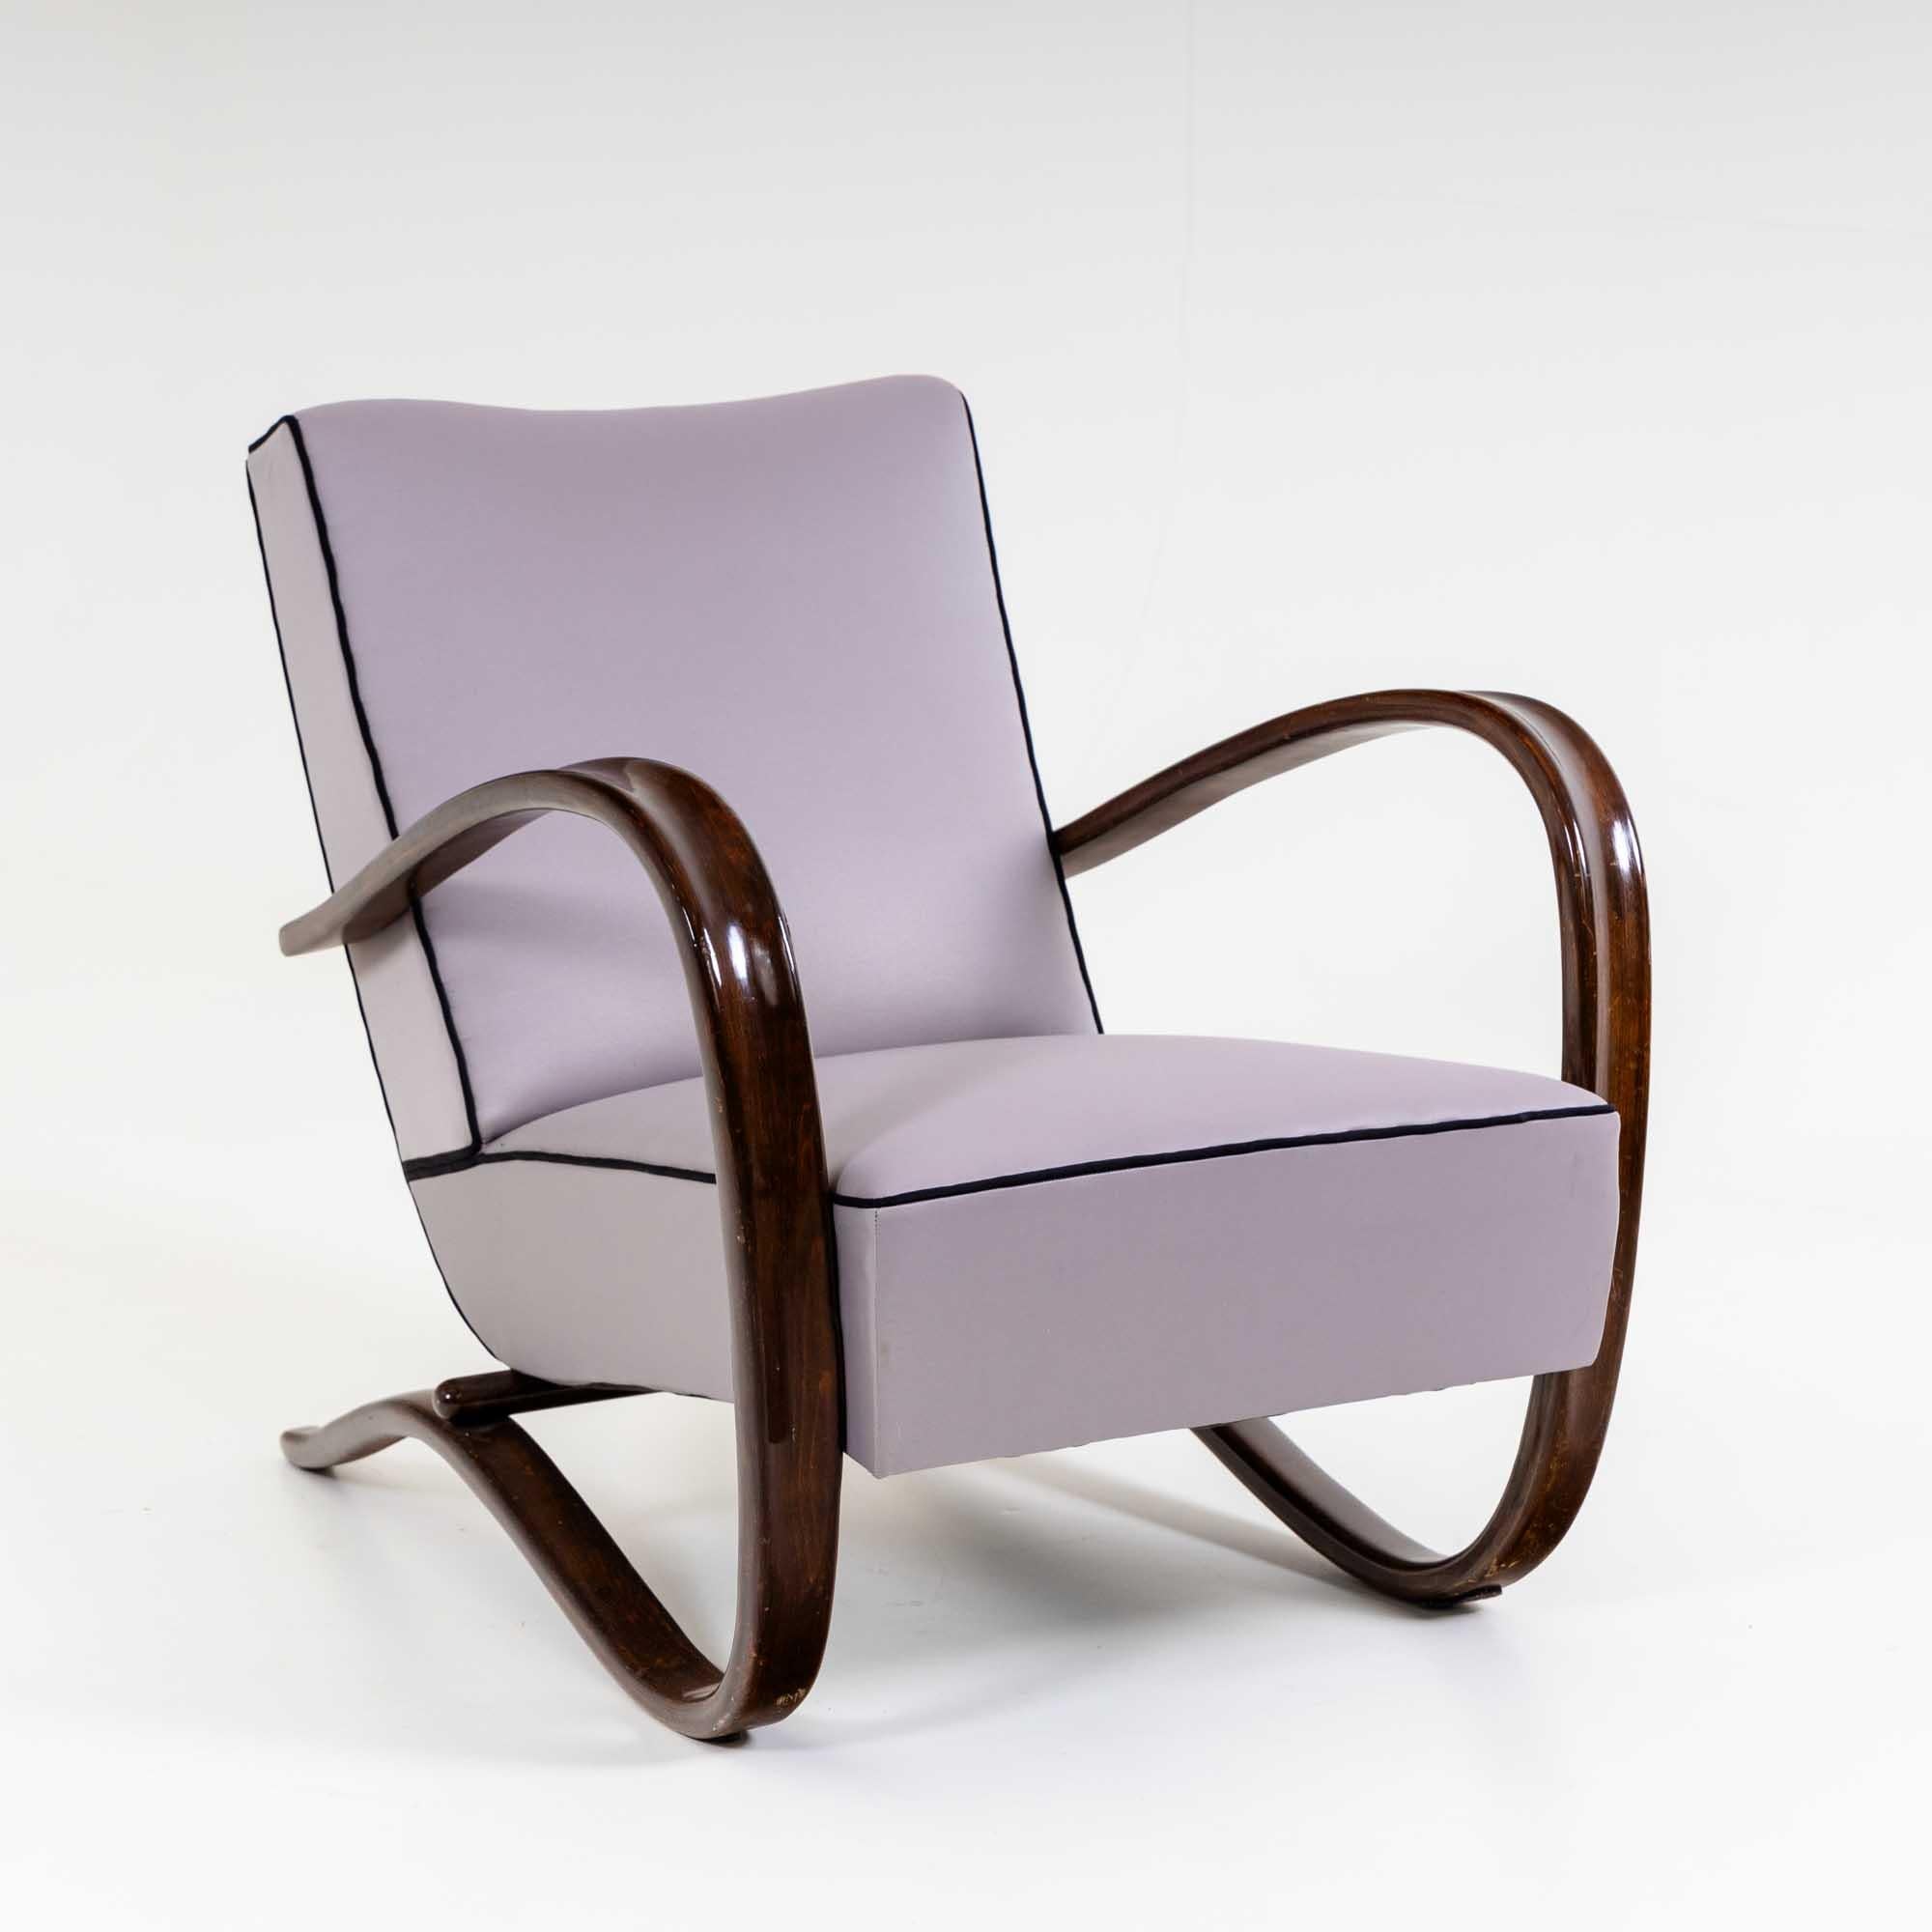 Fauteuil simple H-269 du designer tchèque Jindřich Halabala. Les accoudoirs, teintés dans la masse, suivent une élégante courbe en forme de C sur le côté du coussin d'assise et deviennent le cadre de soutien. Les chaises ont été récemment